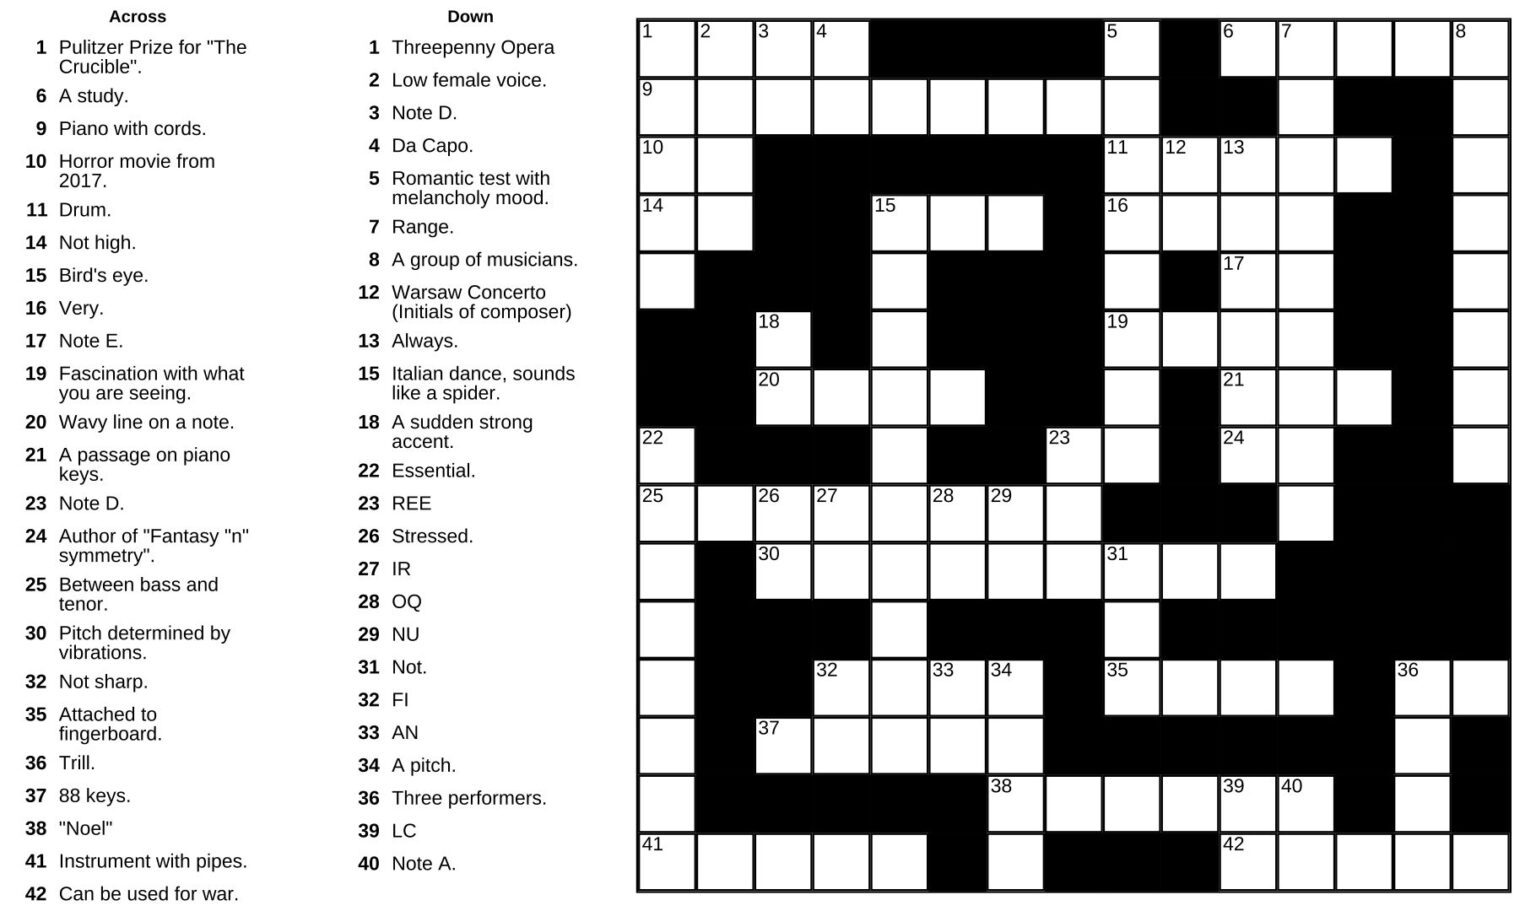 printable-nea-crossword-puzzle-printable-jd